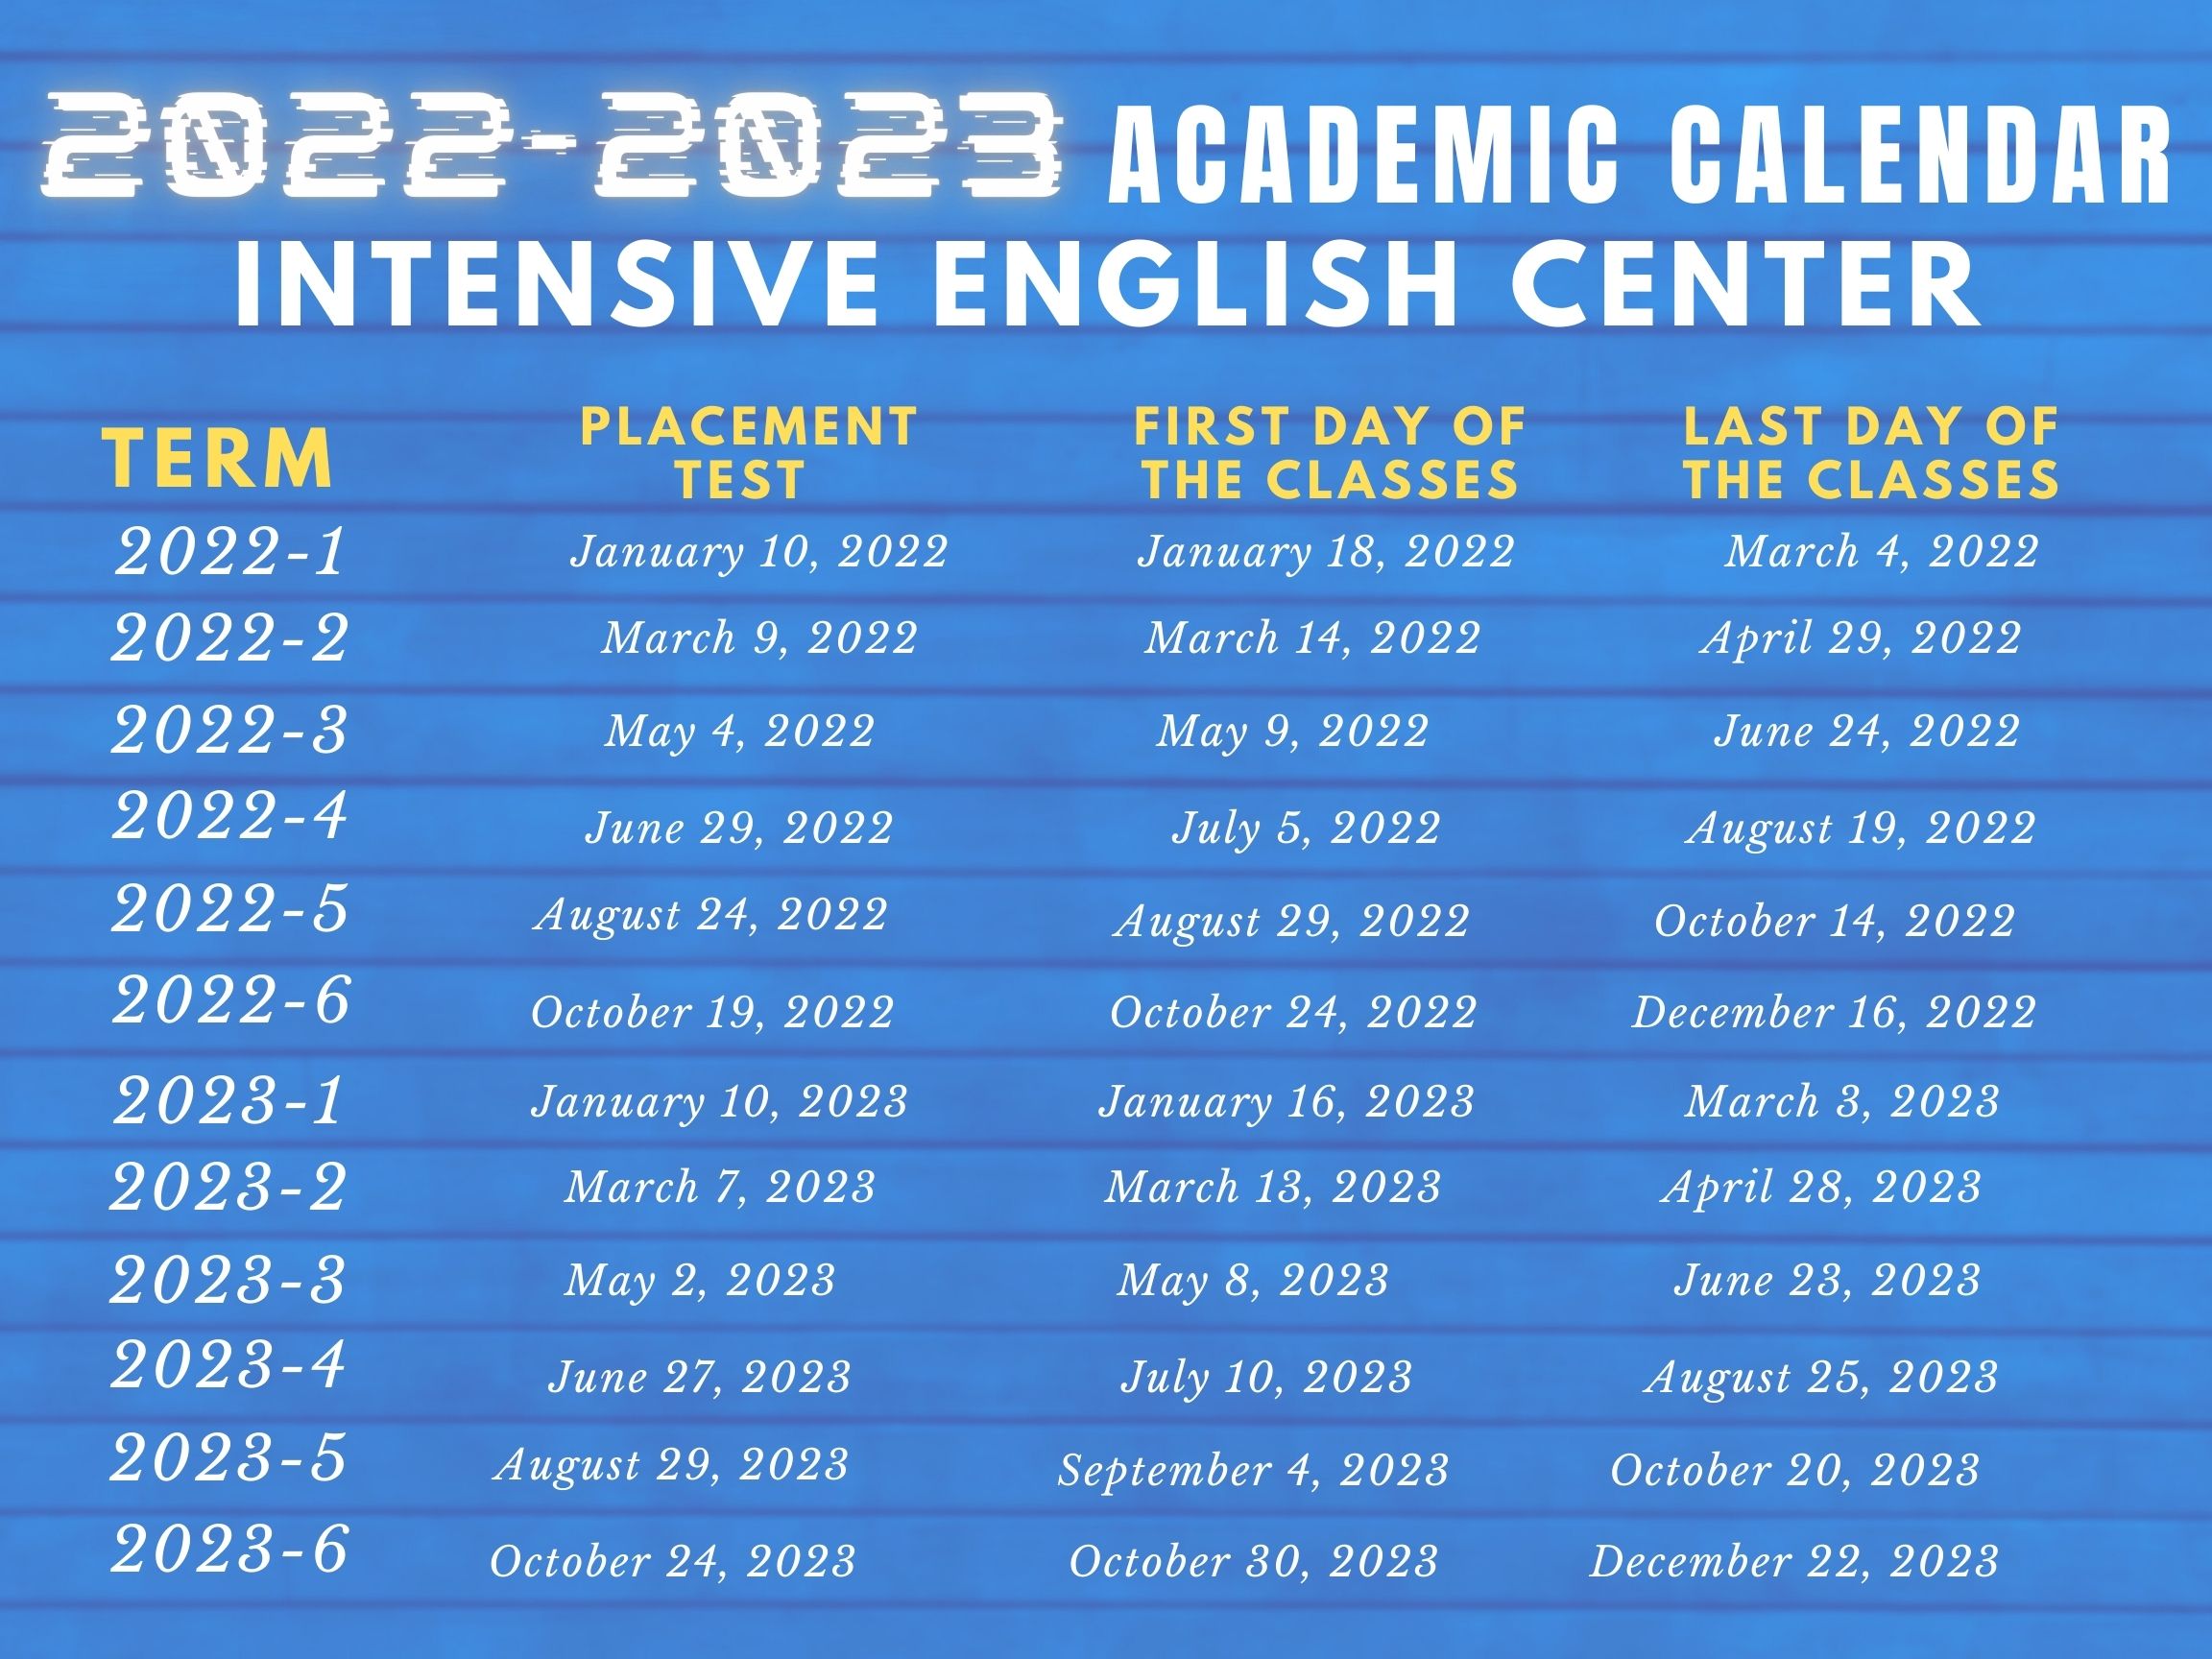 Tsu Calendar 2022 Calendar